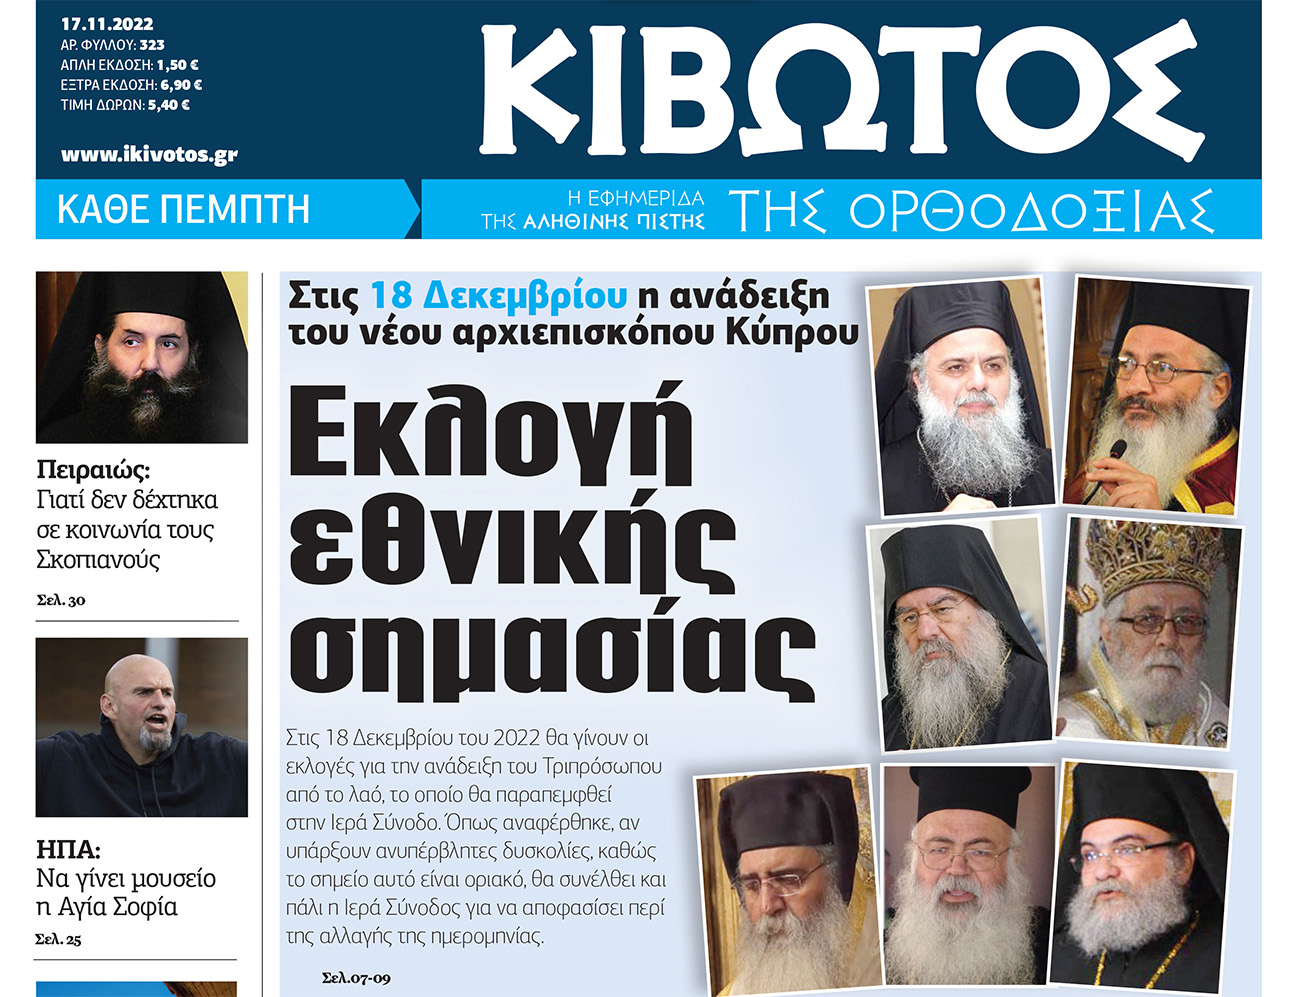 Την Πέμπτη 17 Νοεμβρίου, κυκλοφορεί το νέο φύλλο της Εφημερίδας «Κιβωτός της Ορθοδοξίας»